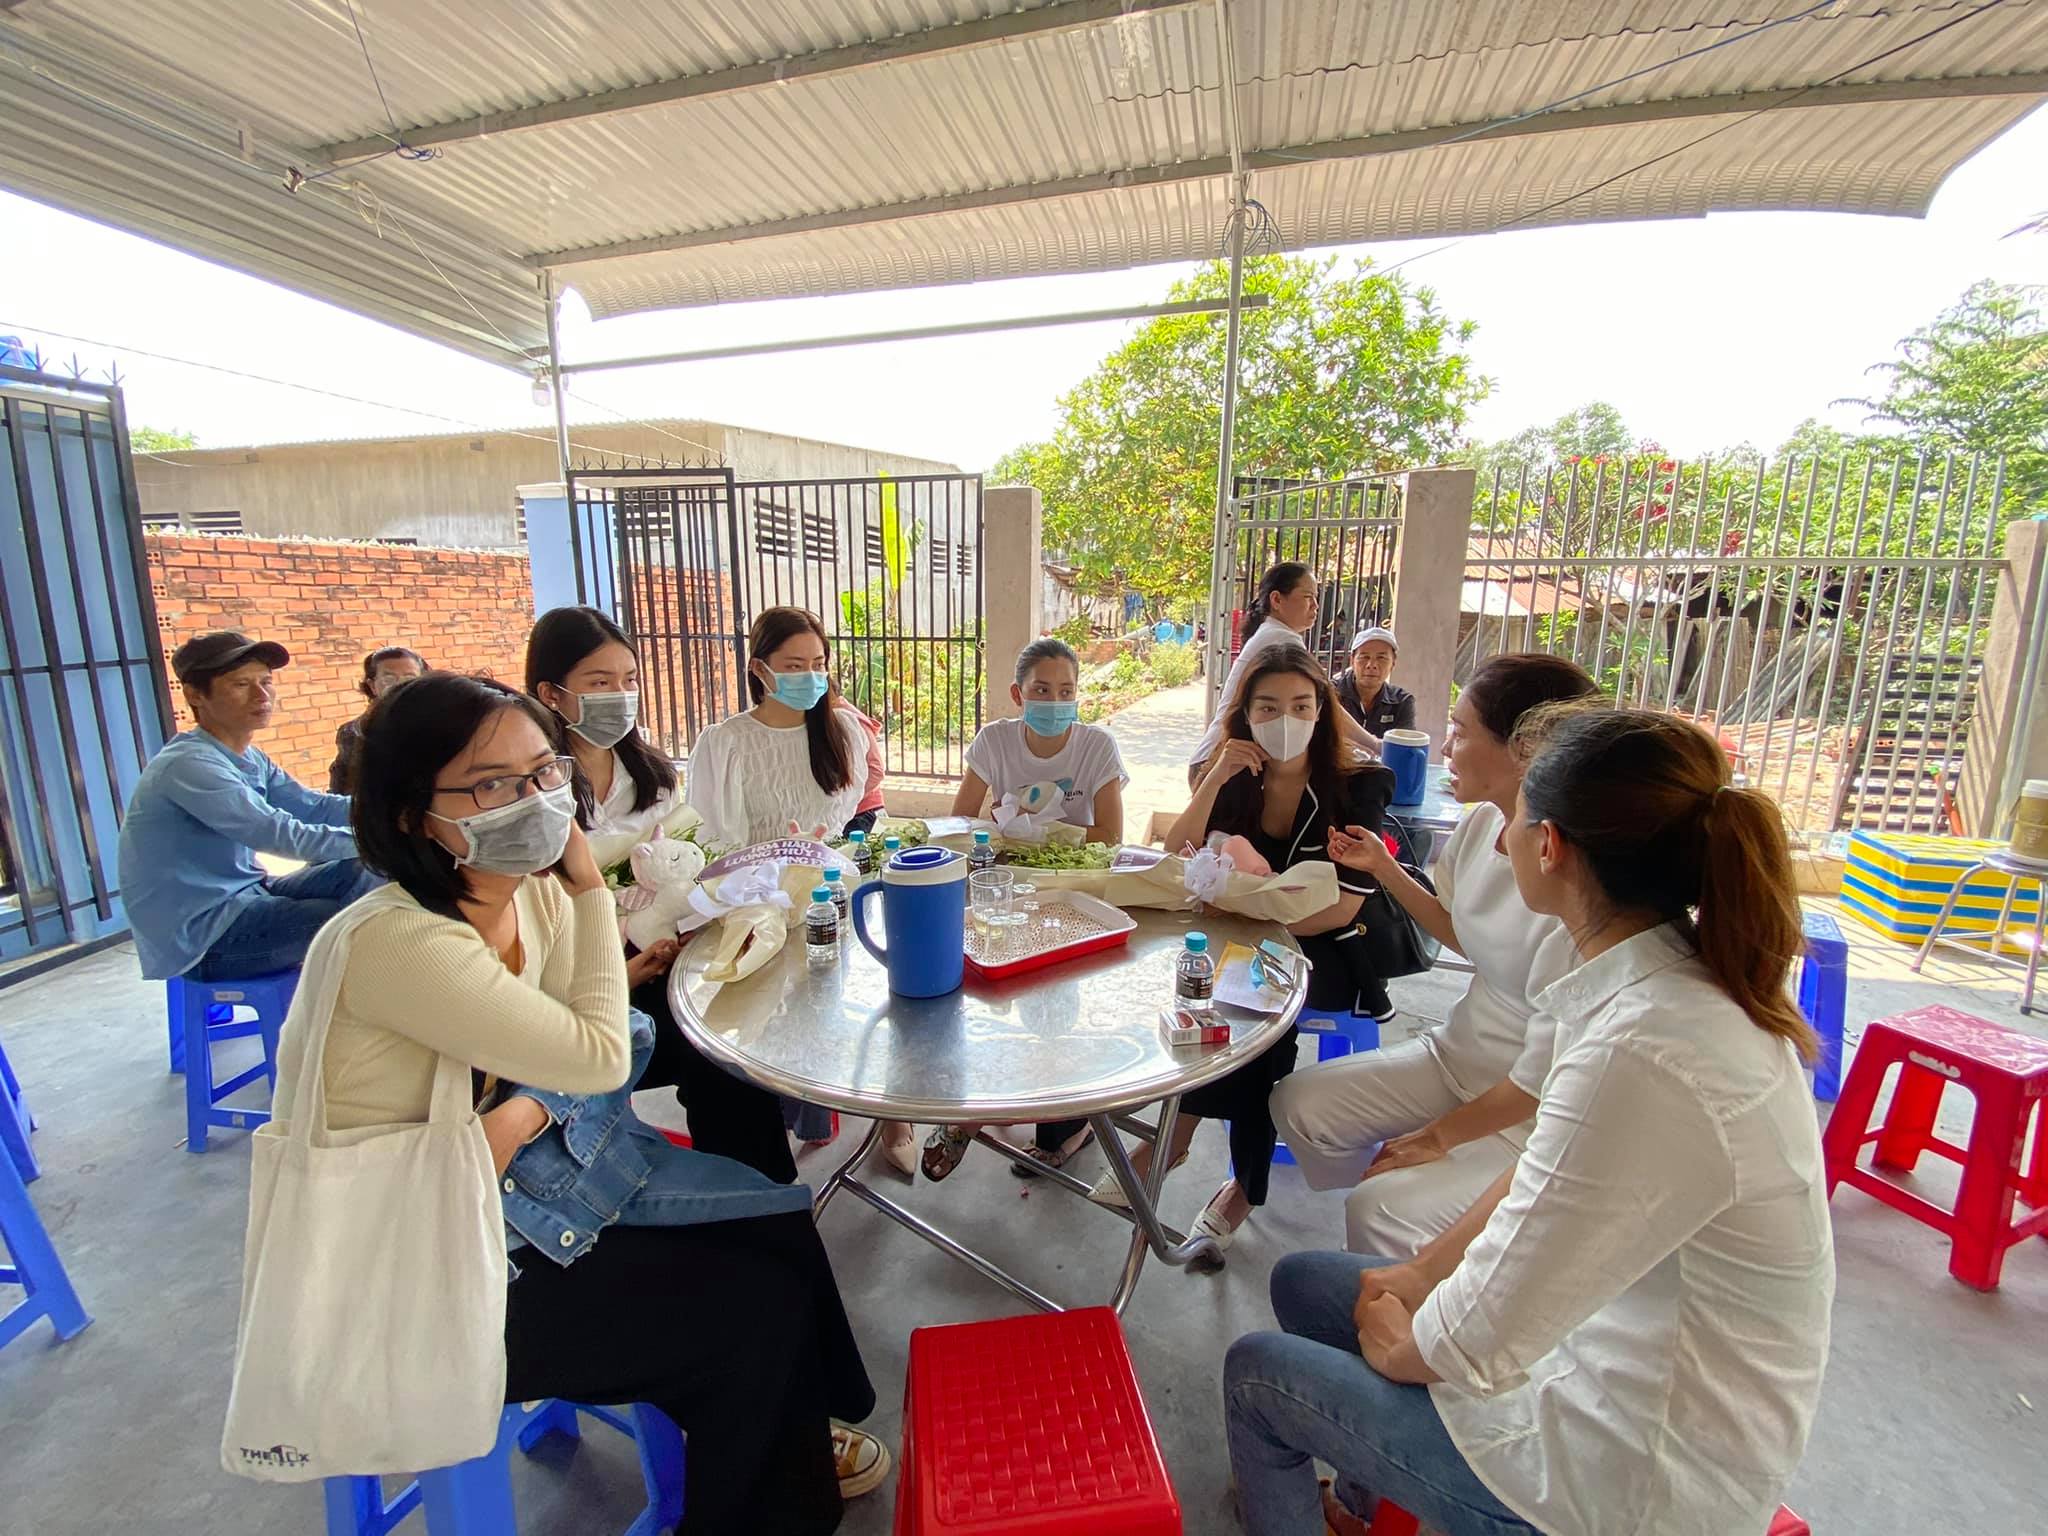 Hoa hậu Lương Thuỳ Linh, Đỗ Mỹ Linh về thăm hỏi gia đình em bé 5 tuổi ở Bà Rịa - Vũng Tàu - ảnh 4